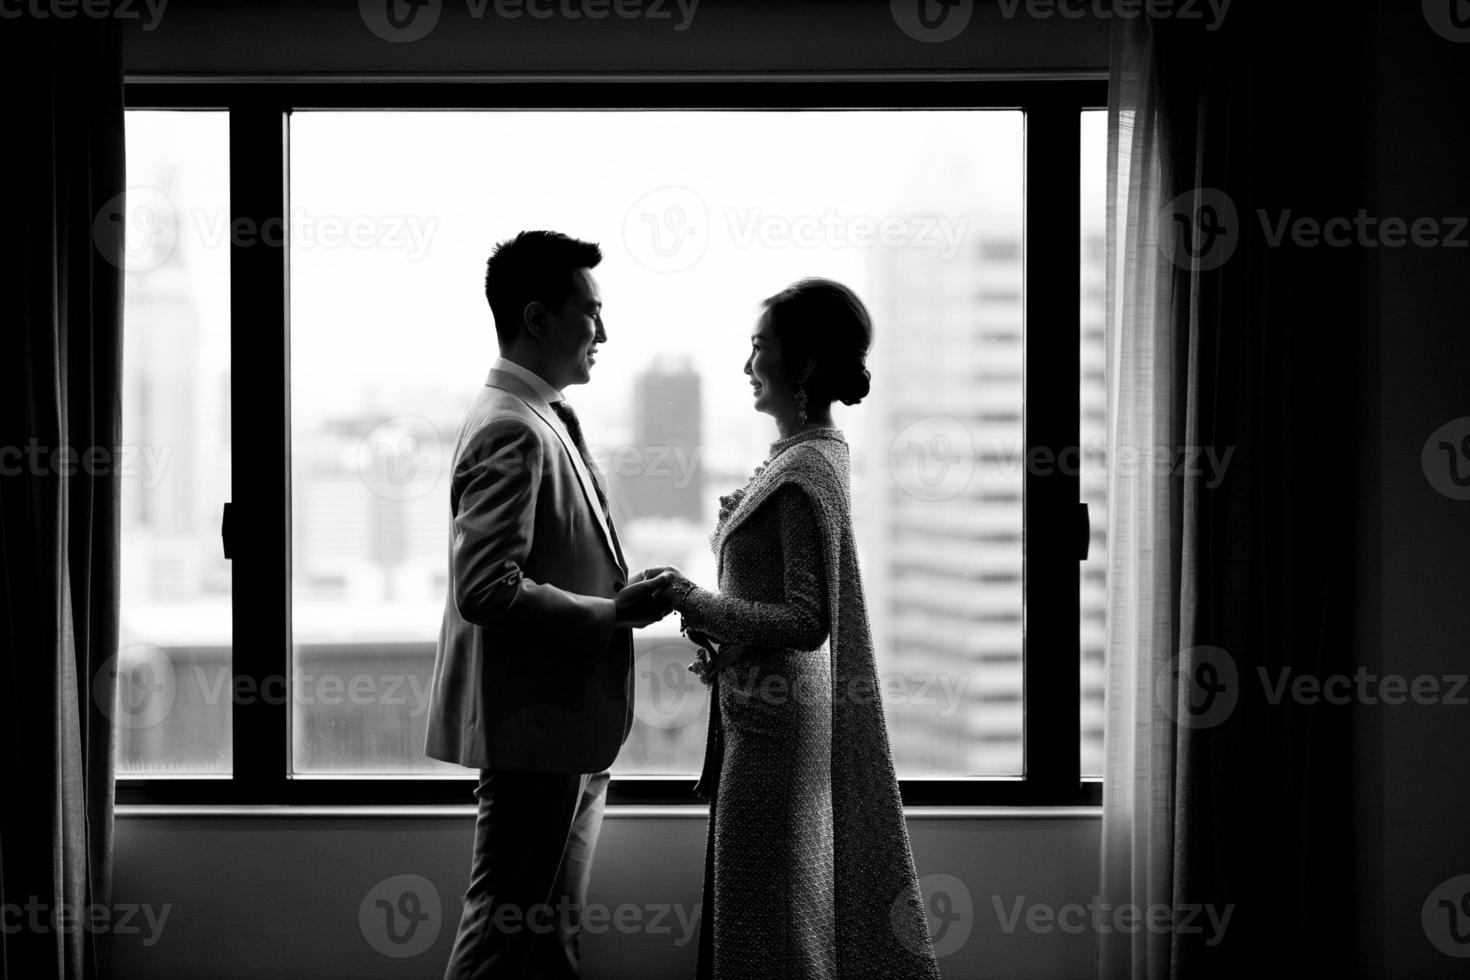 el novio está de pie y sosteniendo la mano en el vestido de novia a la novia durante la ceremonia de compromiso. foto en blanco y negro según la tradición de tailandia, la novia viste un vestido tradicional tailandés.